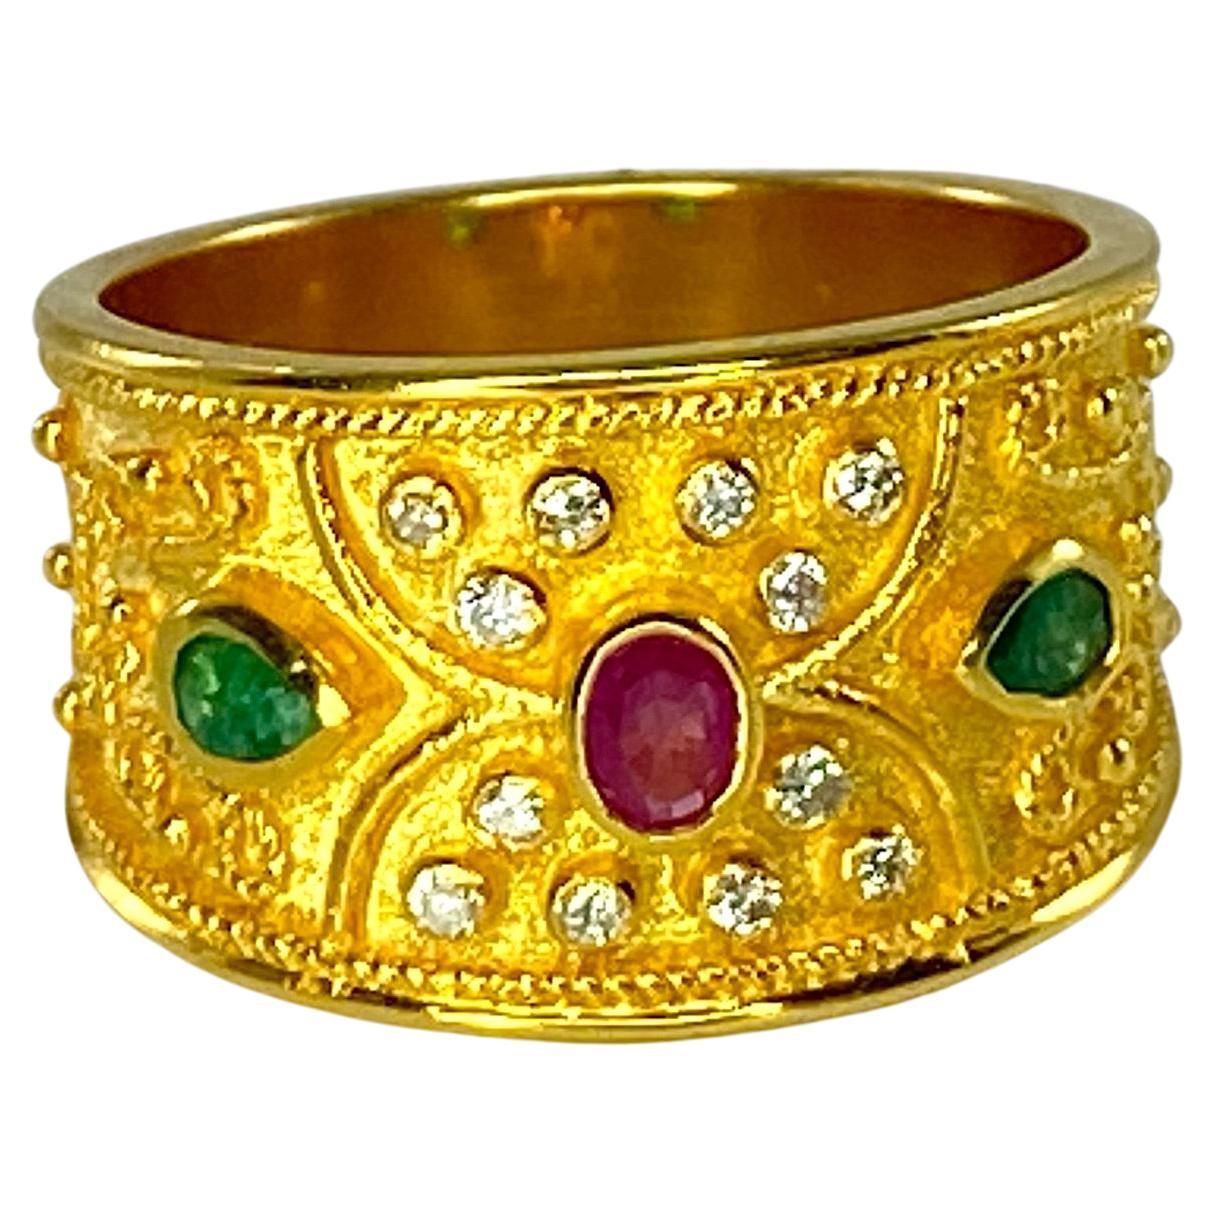 Präsentiert S.Georgios Designer 18 Karat massivem Gelbgold Ring alle handgefertigt in byzantinischen Stil Verarbeitung mit einem einzigartigen Samt Hintergrund und komplizierte Granulation mit viel Detail. Dieser Ring verfügt über 0,12 Karat oval